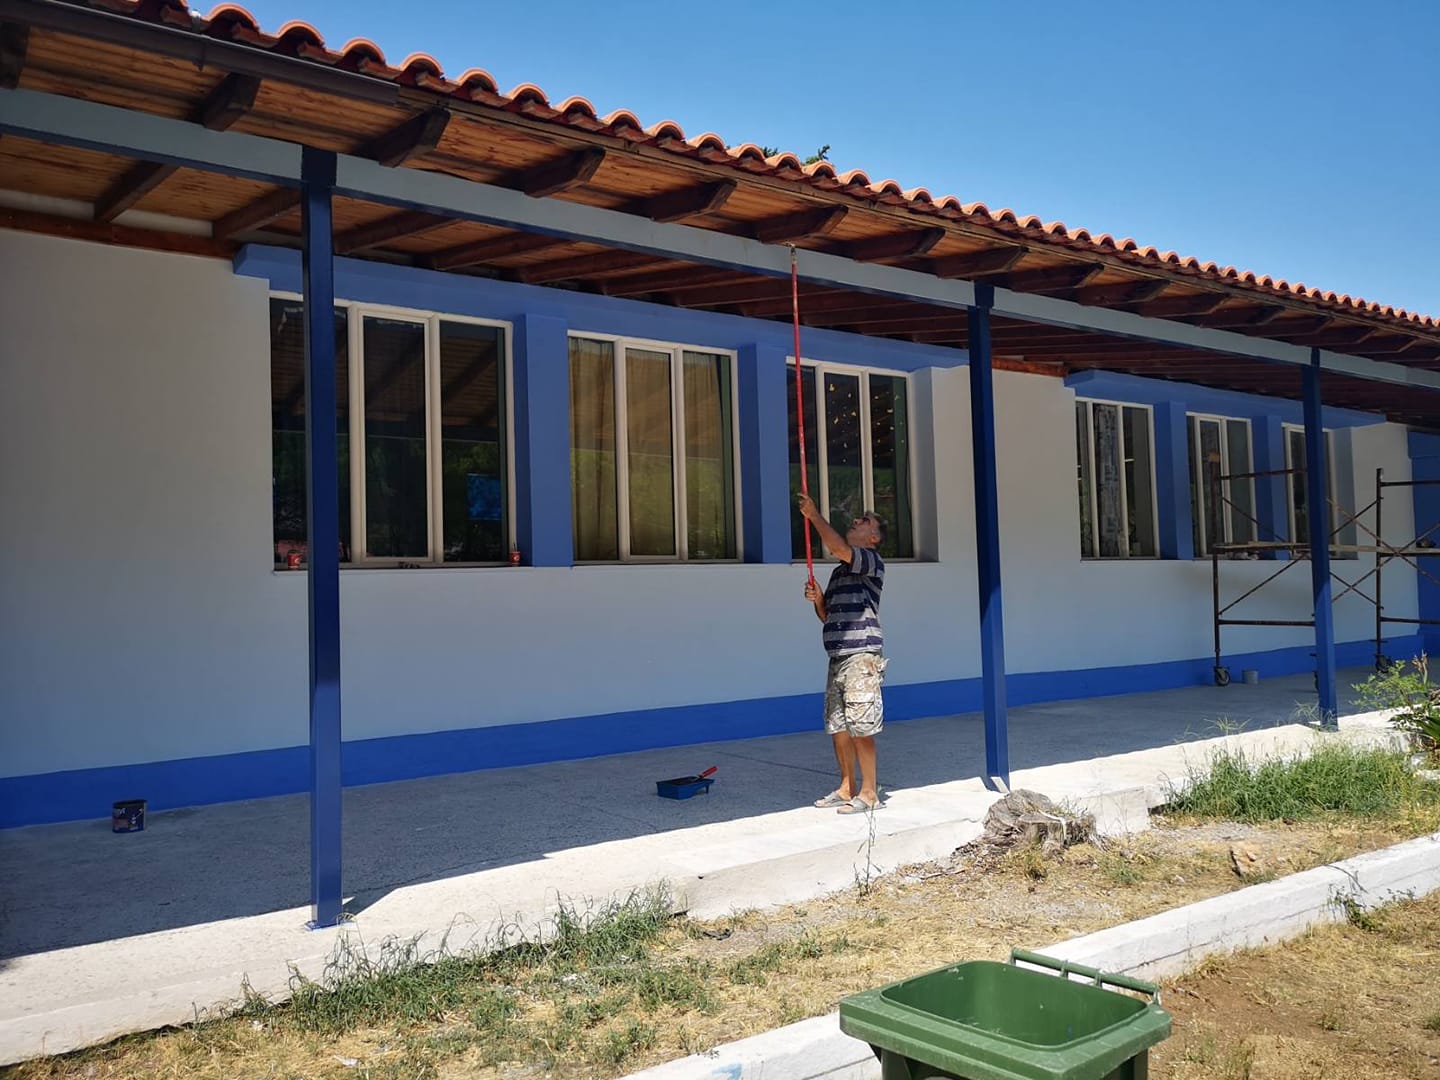 Πήλι Ευβοίας: Αντιδράσεις για την μετατροπή του δημοτικού σχολείου σε μονοθέσιο – Τι λέει στο evima.gr ο Γρηγόρης Δάσκος